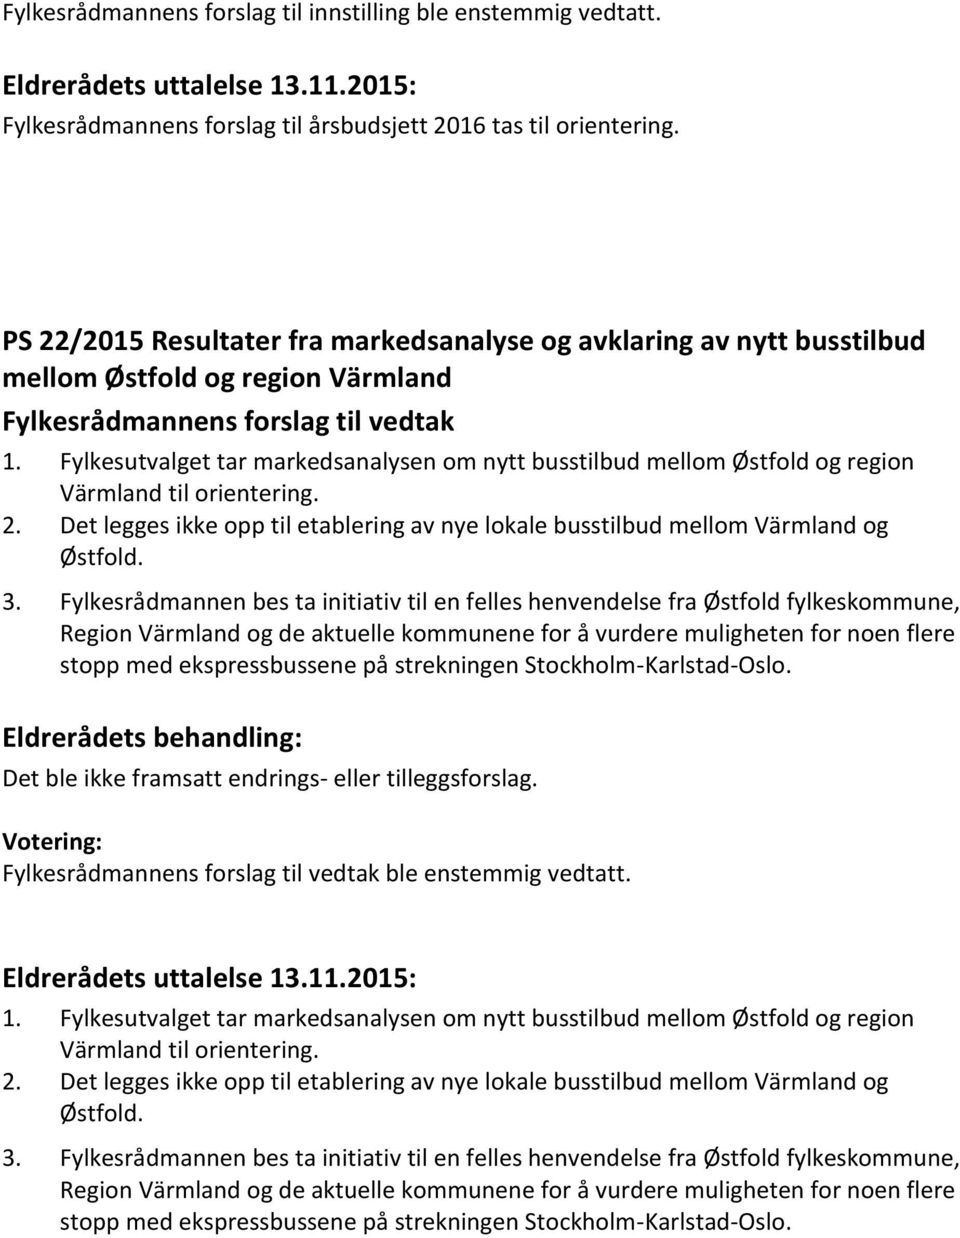 Fylkesutvalget tar markedsanalysen om nytt busstilbud mellom Østfold og region Värmland til orientering. 2. Det legges ikke opp til etablering av nye lokale busstilbud mellom Värmland og Østfold. 3.